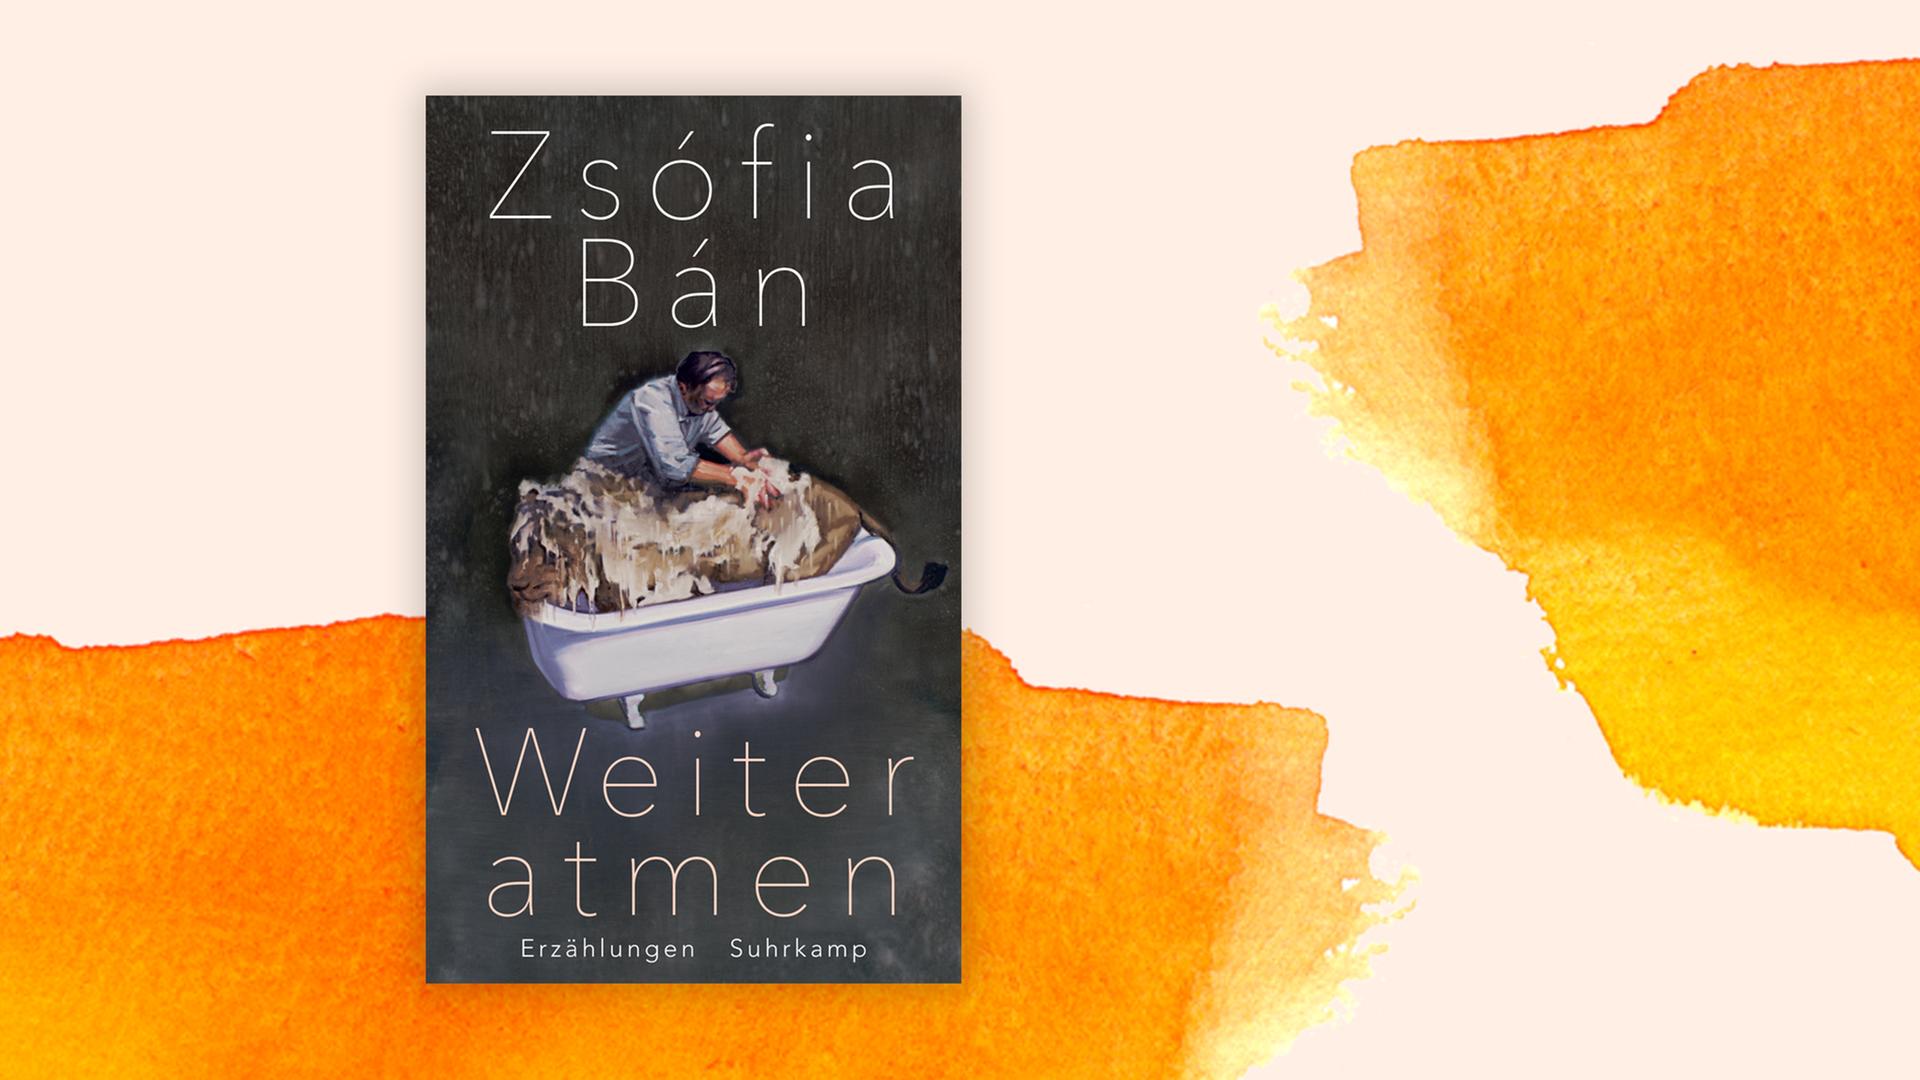 Das Cover von Zsófia Báns "Weiter atmen" auf orangefarbenem Hintergrund.